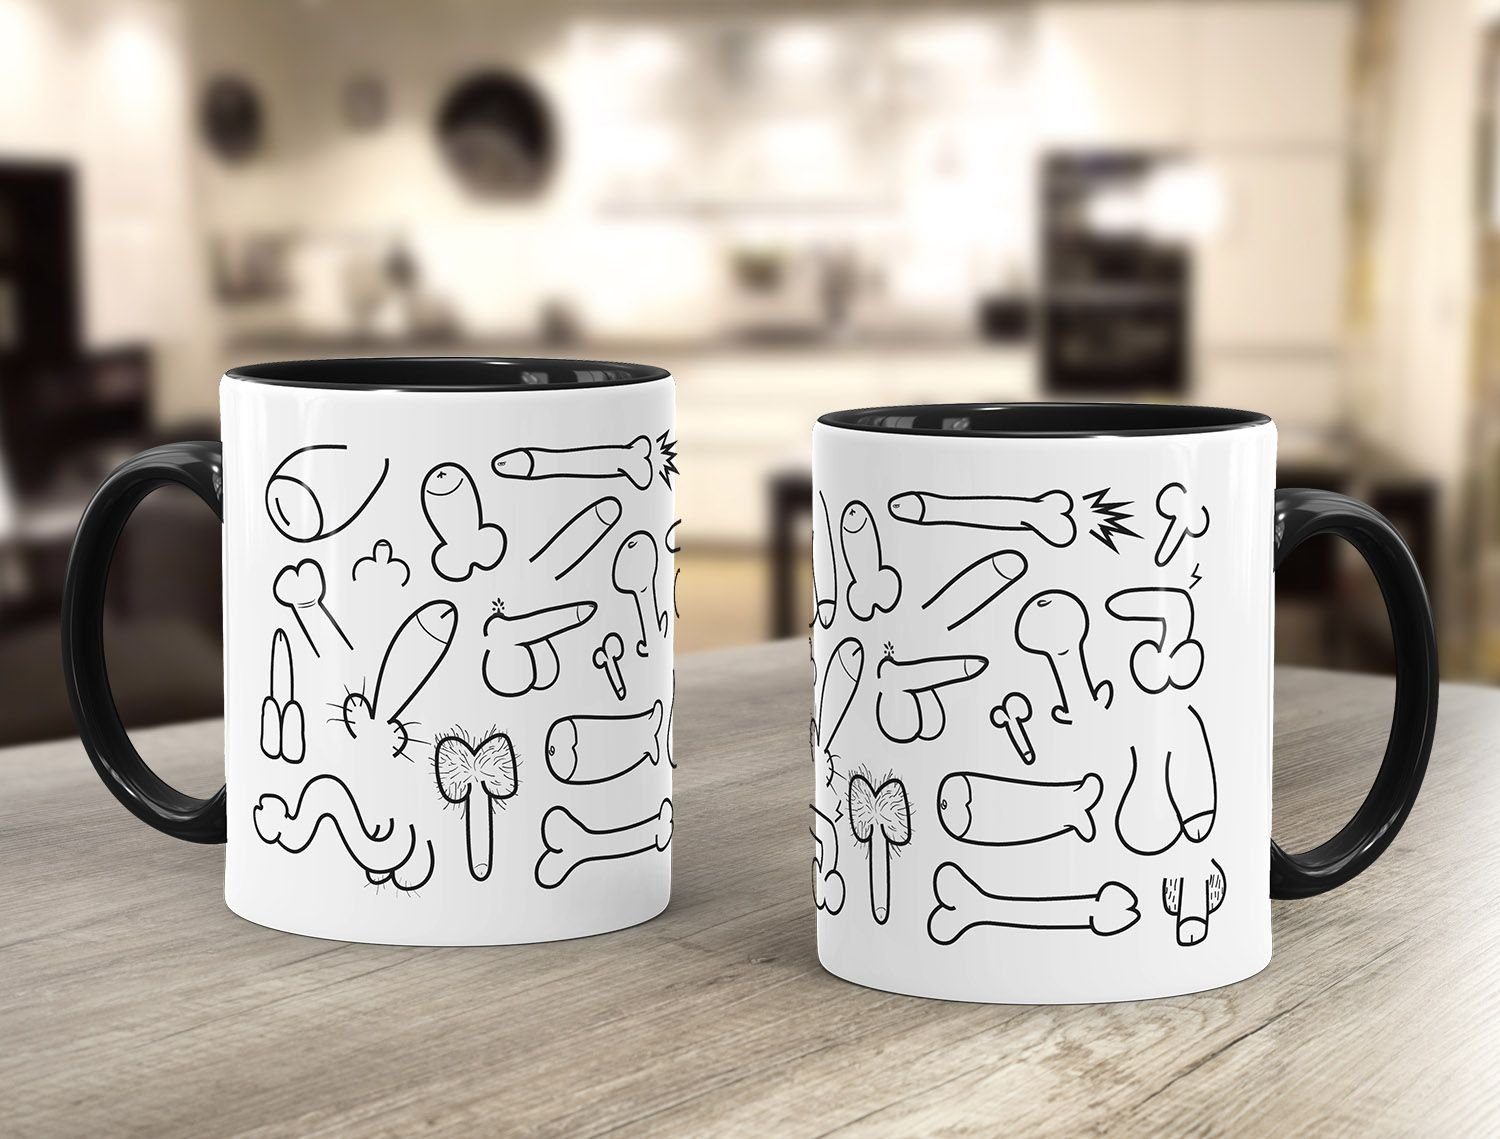 Fun MoonWorks Keramik Keramiktasse Penis glänzend Teetasse Tasse Tasse Tasse Kaffeetasse Muster MoonWorks®,